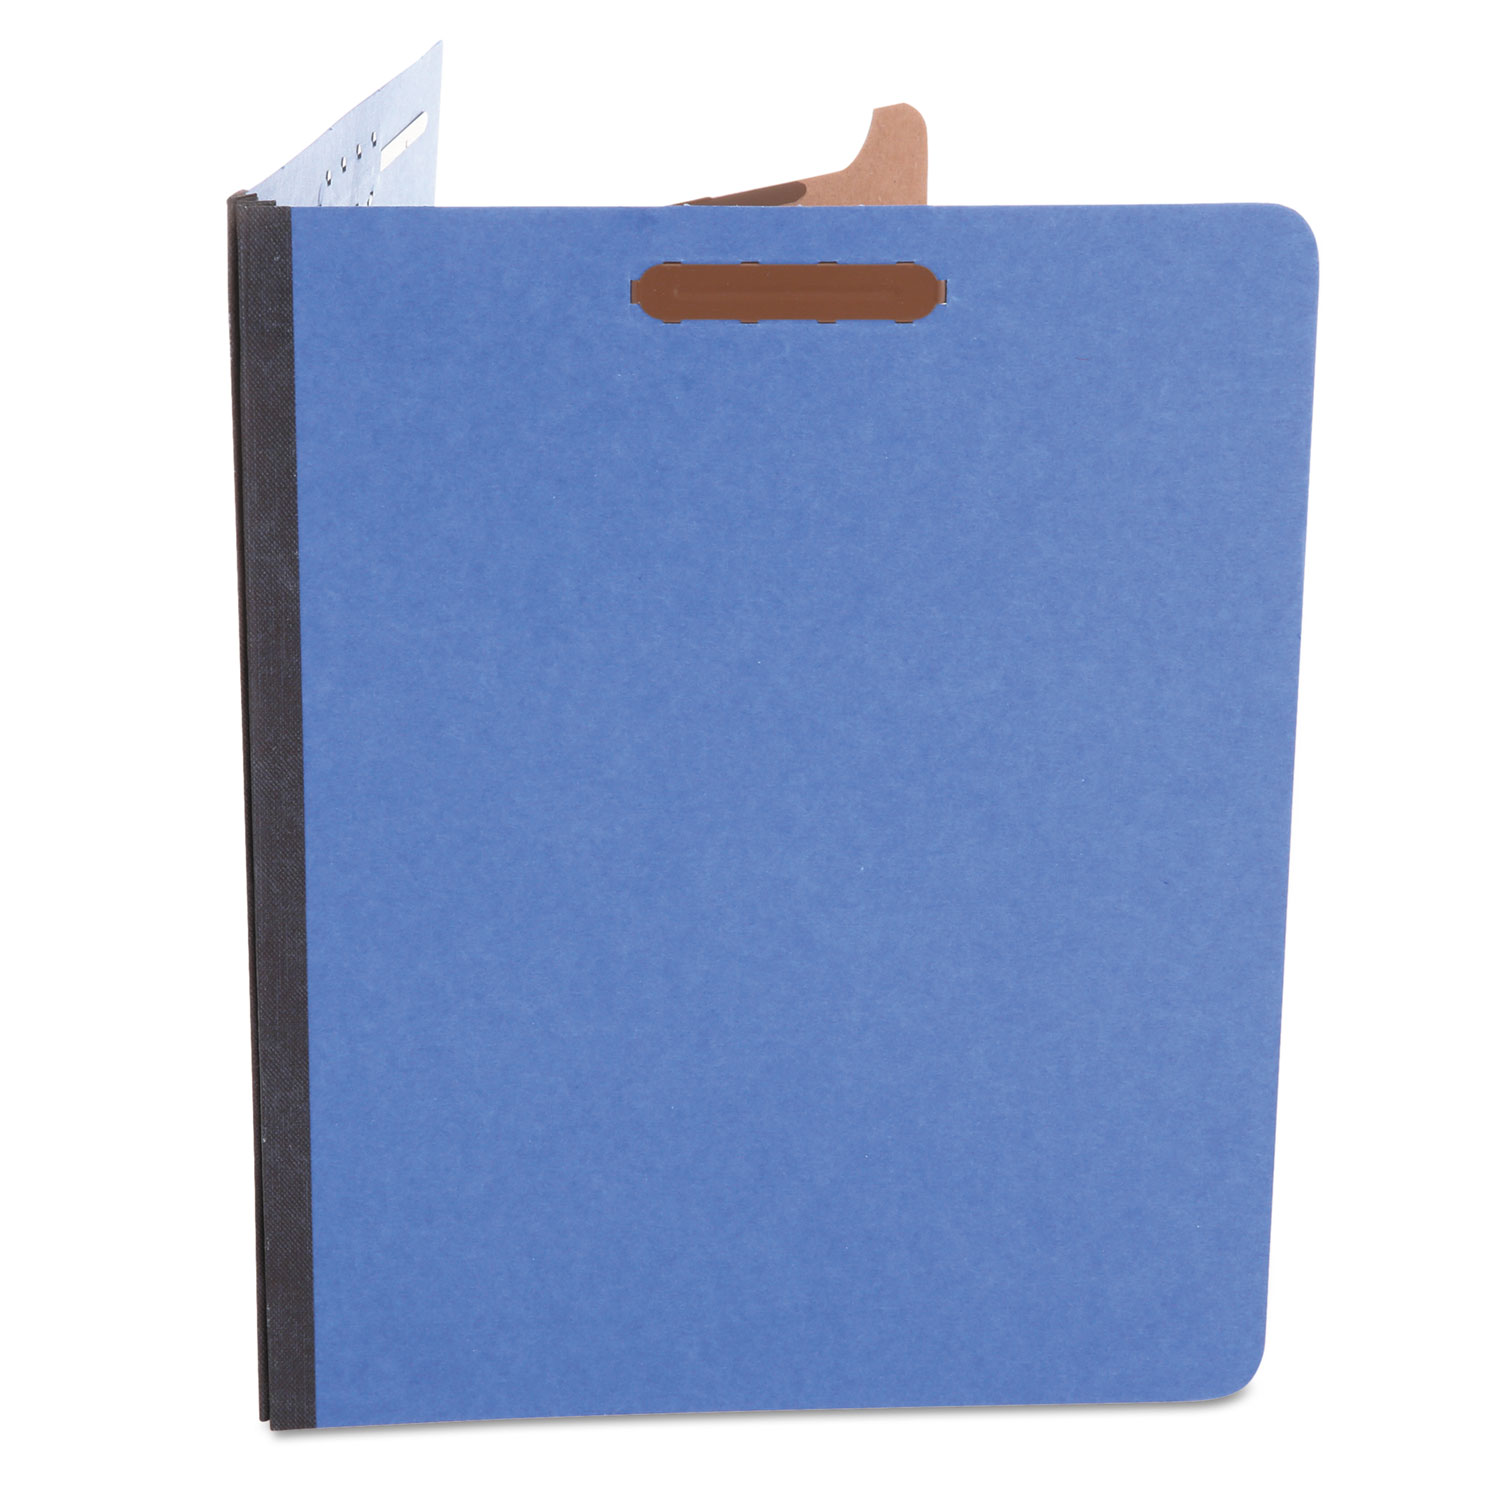 Pressboard Classification Folders, Letter, Four-Section, Cobalt Blue, 10/Box